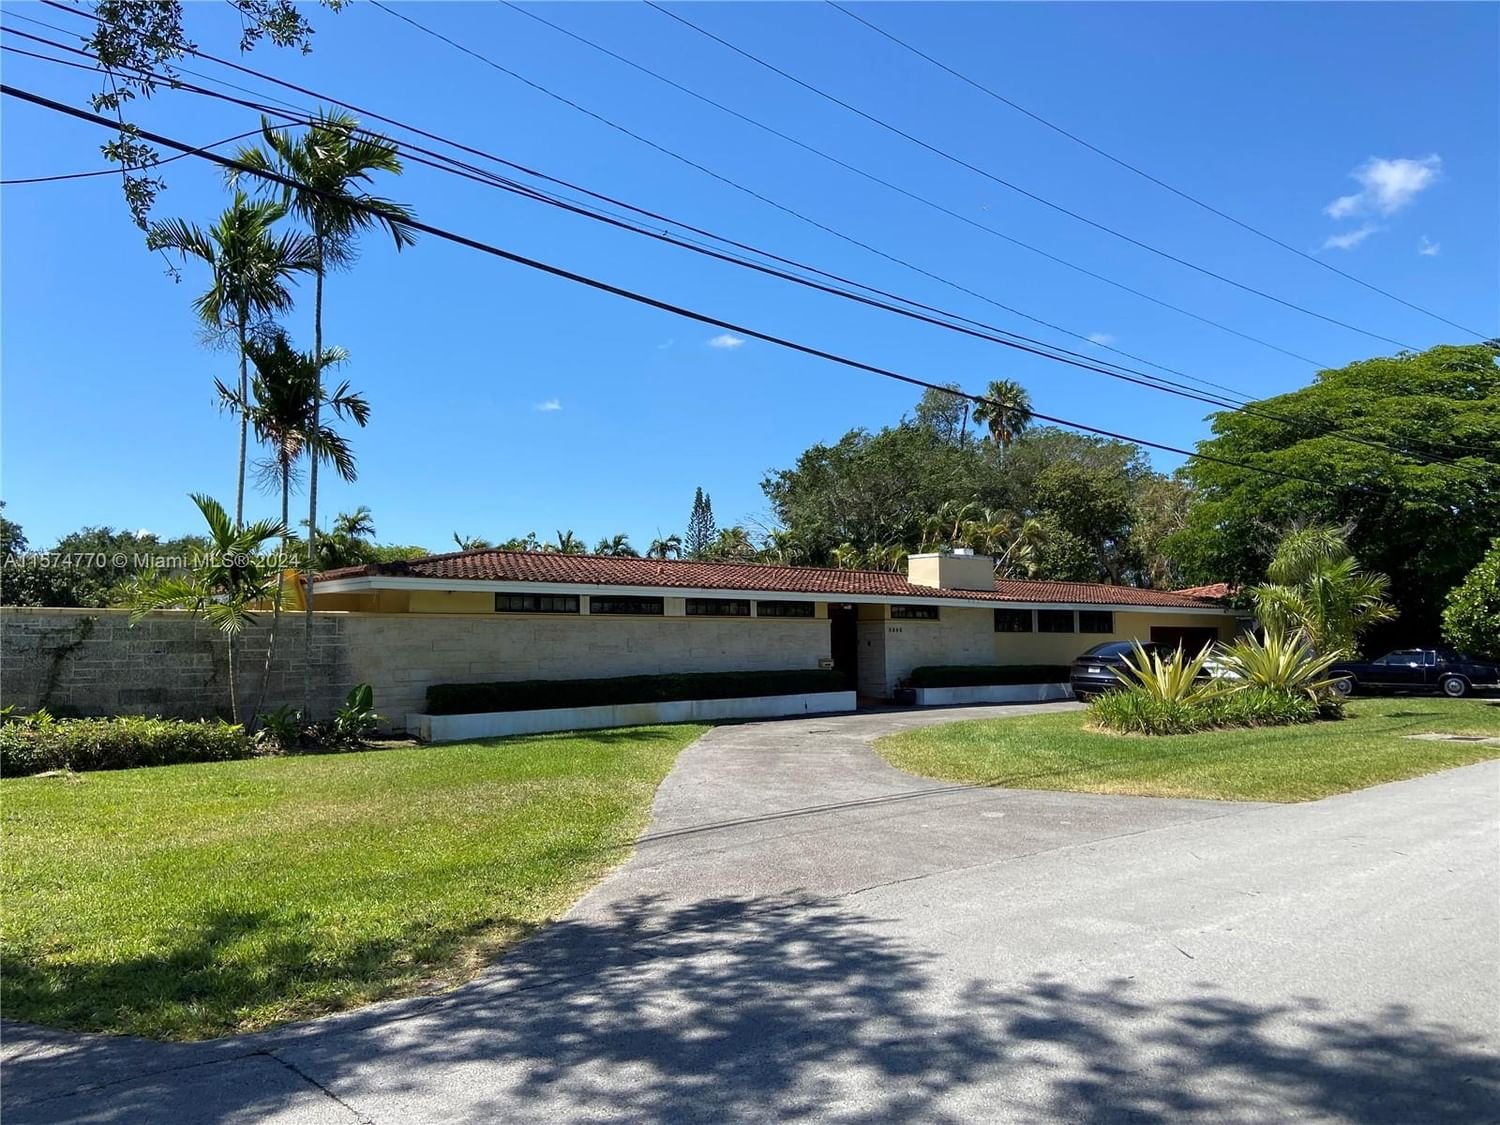 Real estate property located at 5900 34th St, Miami-Dade County, CENTRAL MIAMI PT 1, Miami, FL